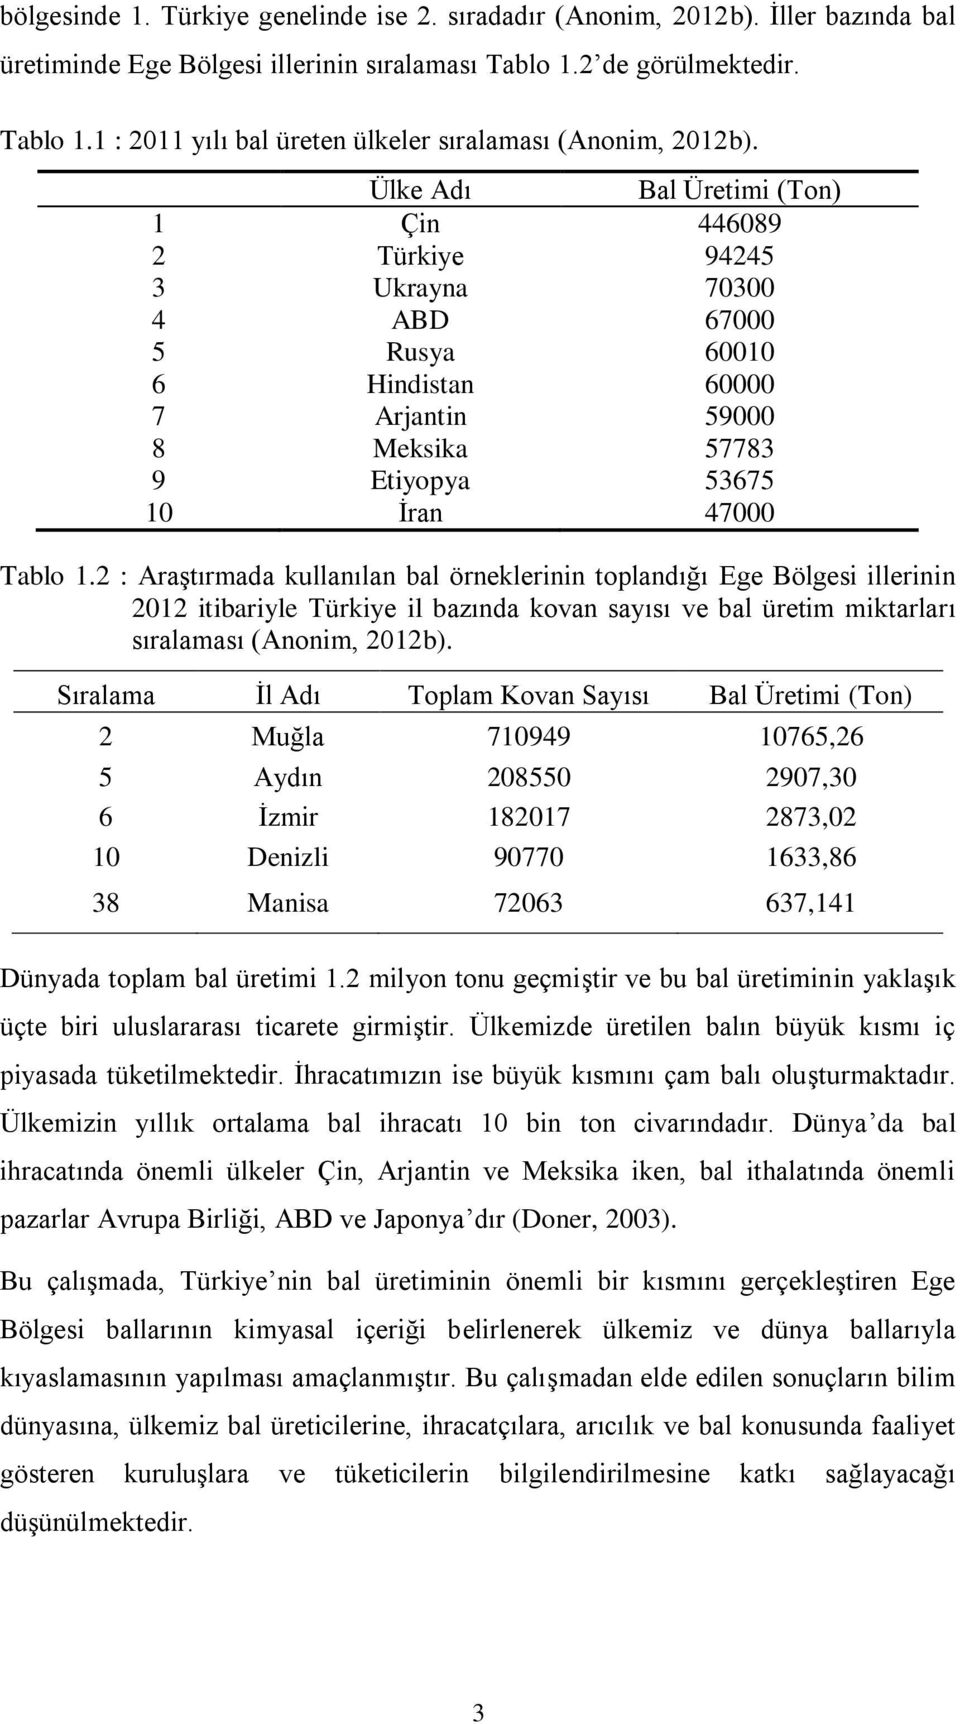 2 : Araştırmada kullanılan bal örneklerinin toplandığı Ege Bölgesi illerinin 2012 itibariyle Türkiye il bazında kovan sayısı ve bal üretim miktarları sıralaması (Anonim, 2012b).